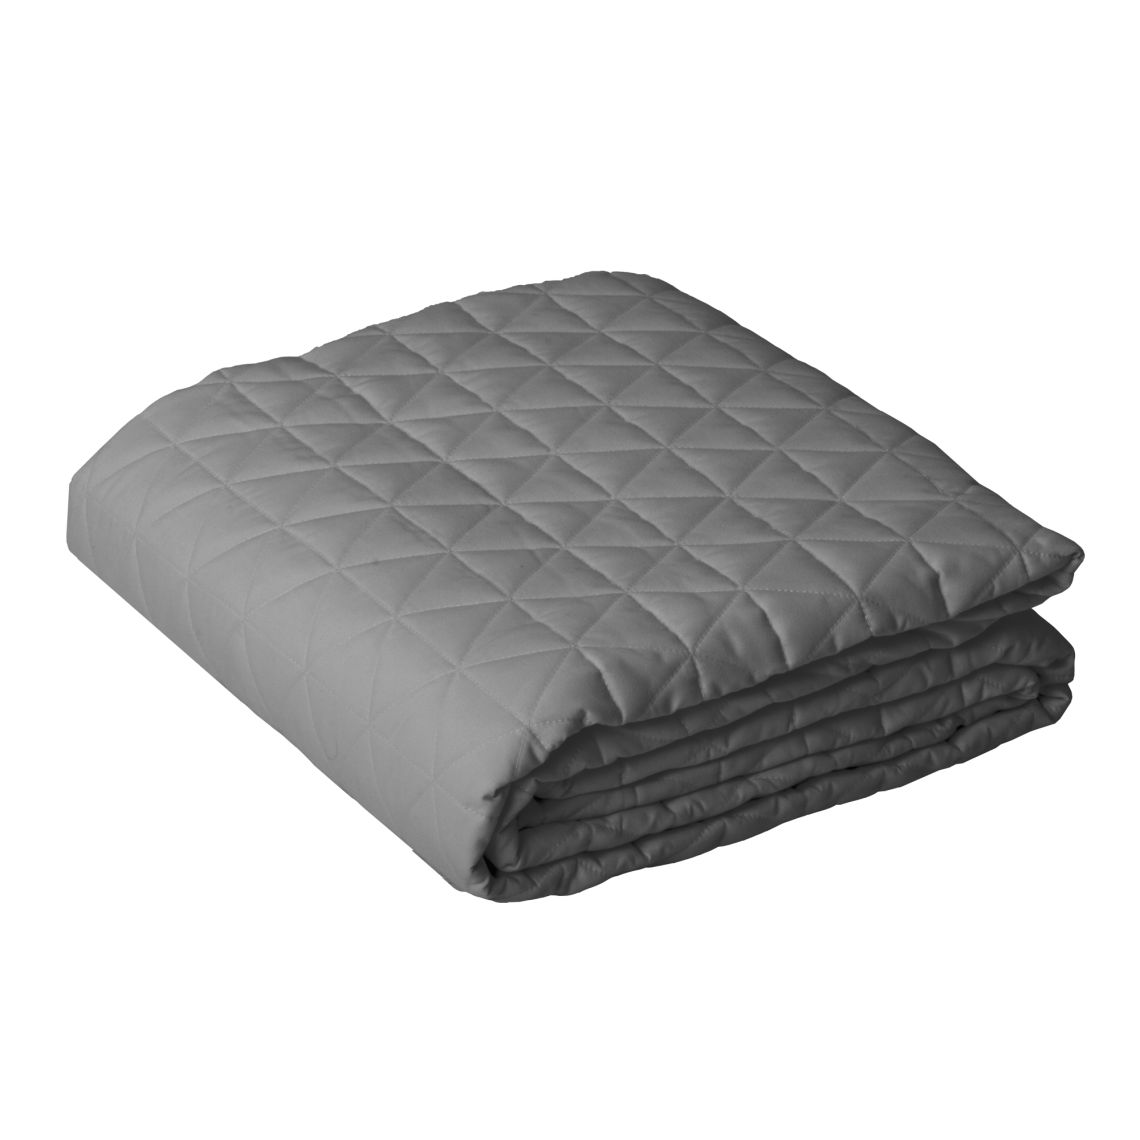 Premium Microfiber Quilted Blanket